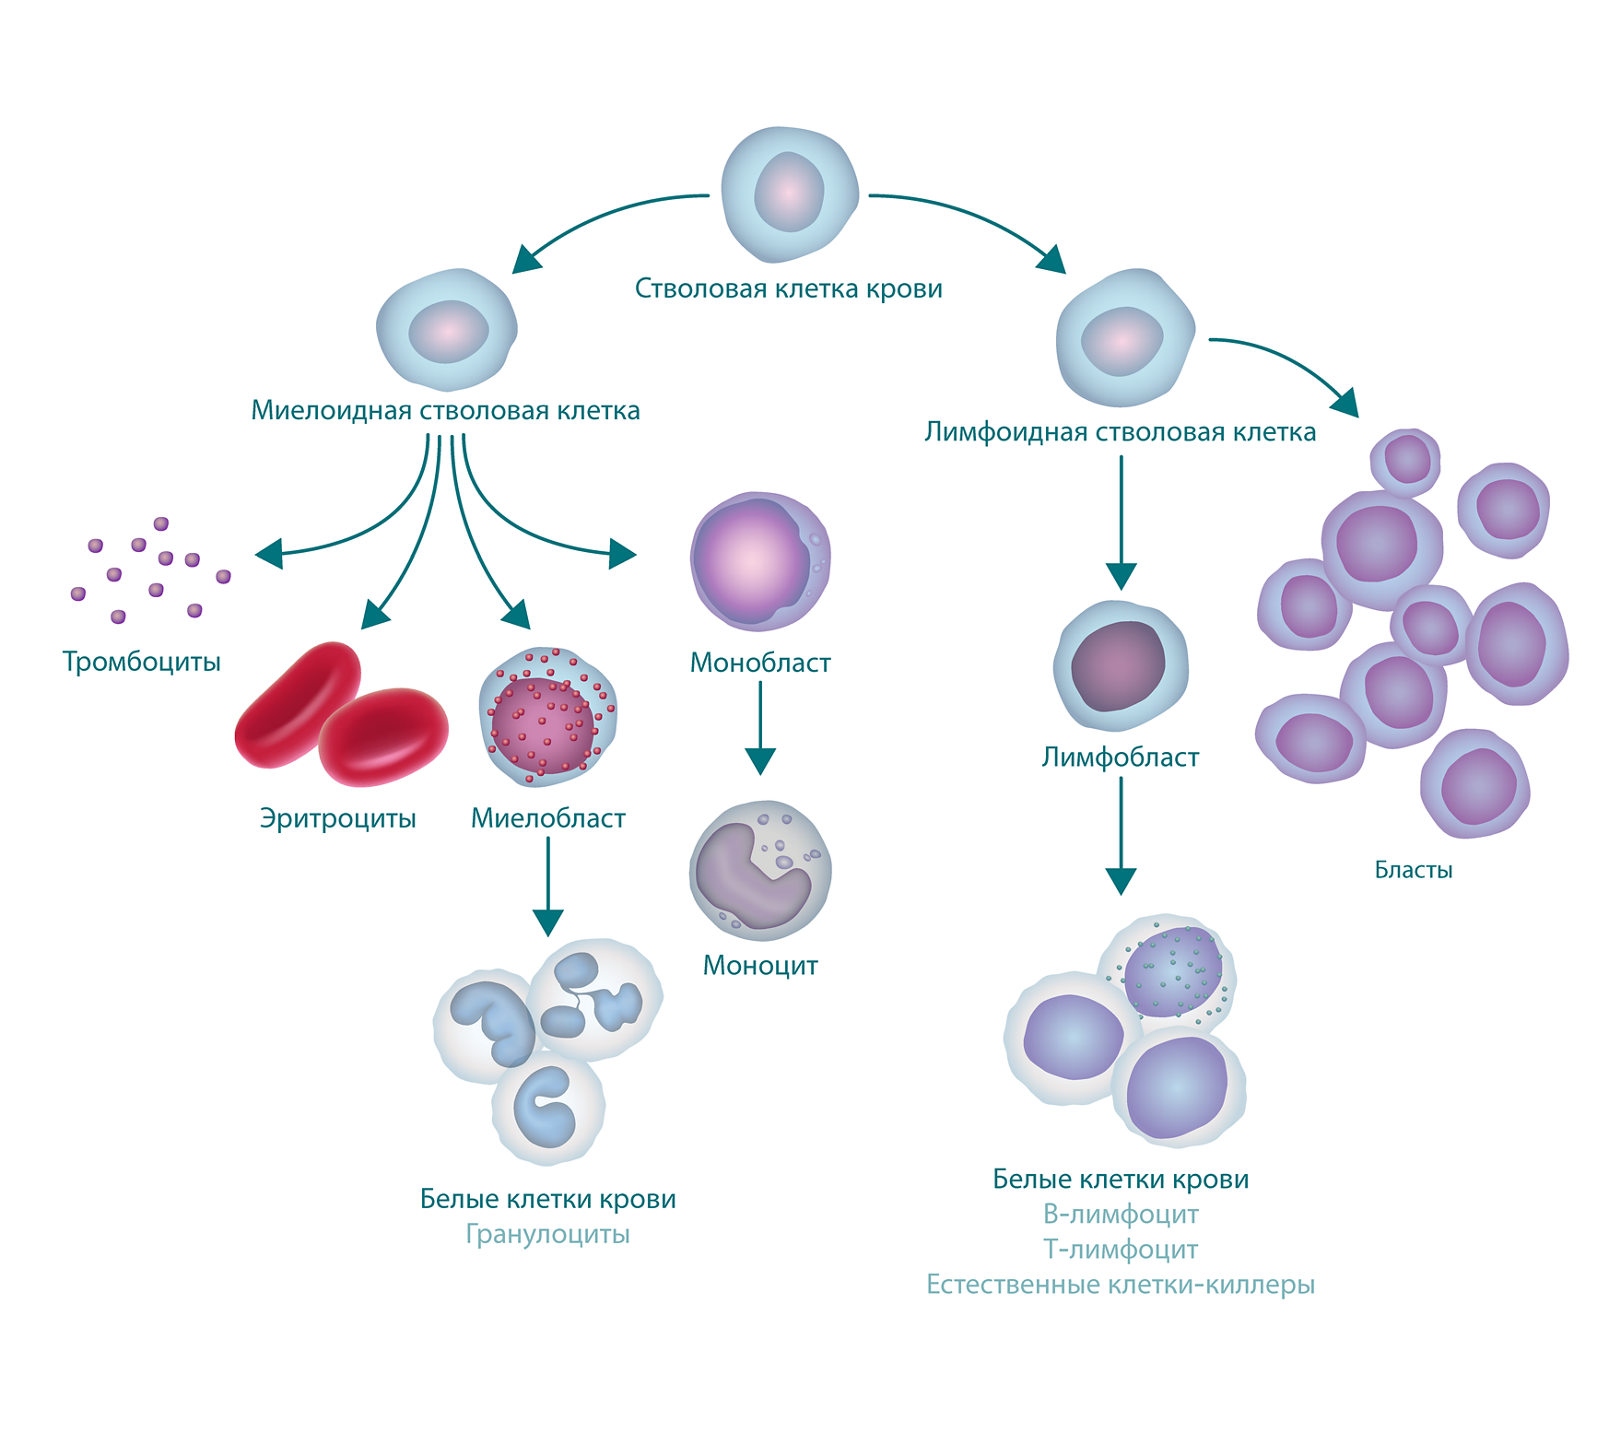 Рисунок, на котором показан процесс кроветворения и формирования бластных клеток. В верхней части рисунка представлена стволовая клетка крови. С левой стороны от нее отходит миелоидная стволовая клетка, из которой формируются тромбоциты, эритроциты, миелобласт и монобласт. Миелобласт превращается в лейкоциты (также называемые гранулоцитами), а монобласт превращается в моноцит. С правой стороны от стволовой клетки крови отходят лимфоидные стволовые клетки, формирующие лимфобласты (которые превращаются в лейкоциты) и бластные клетки.